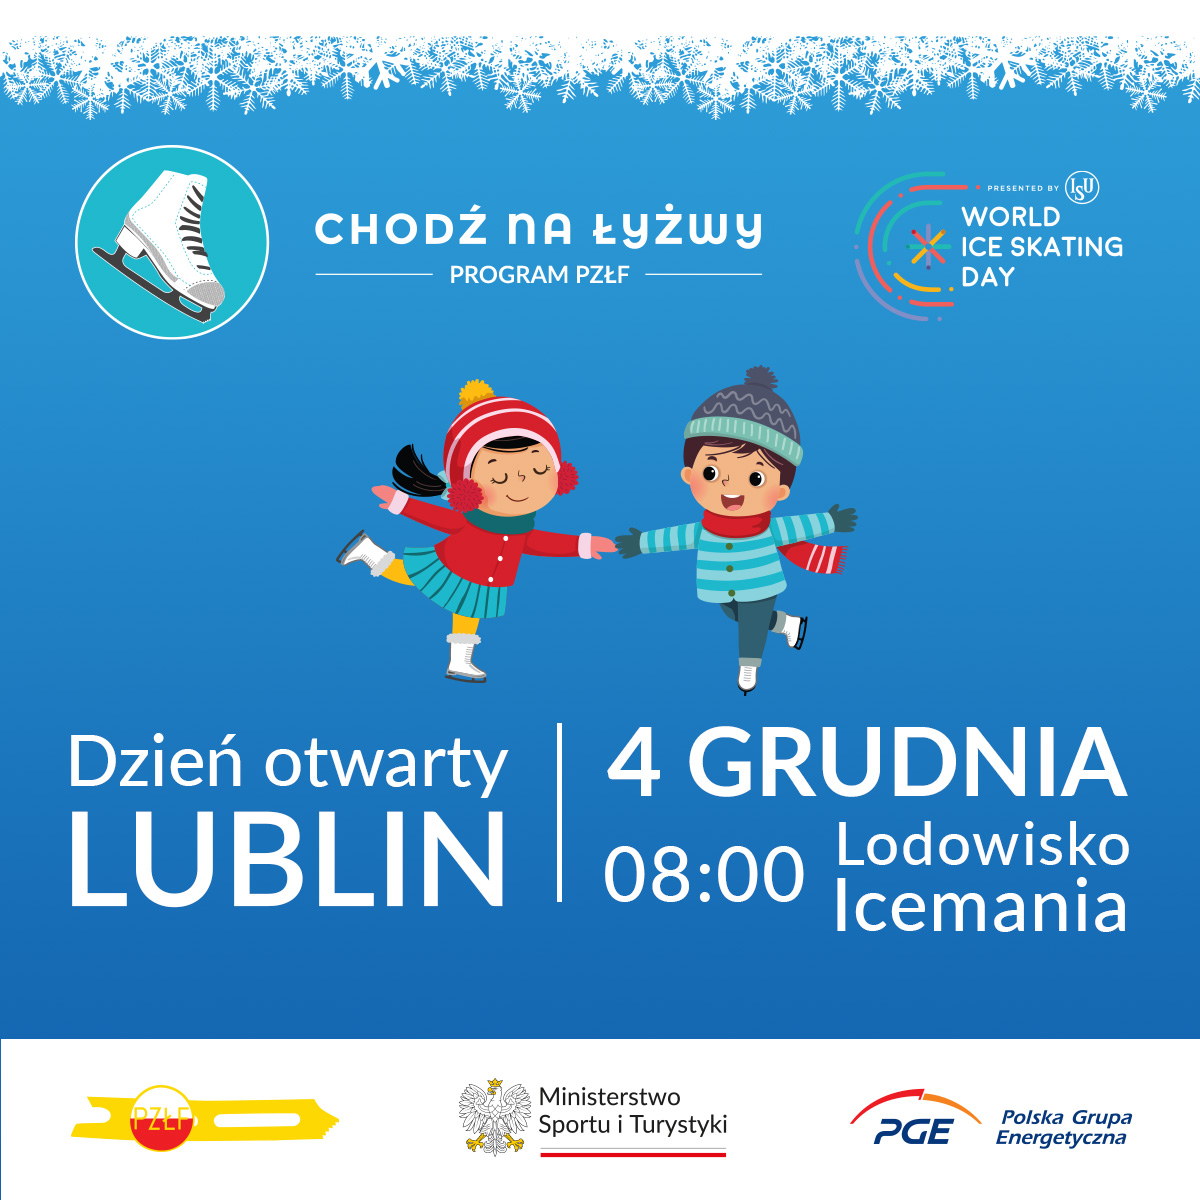 Dzień otwarty i piknik rodzinny w ramach programu „Chodź na Łyżwy” 4 grudnia w Lublinie